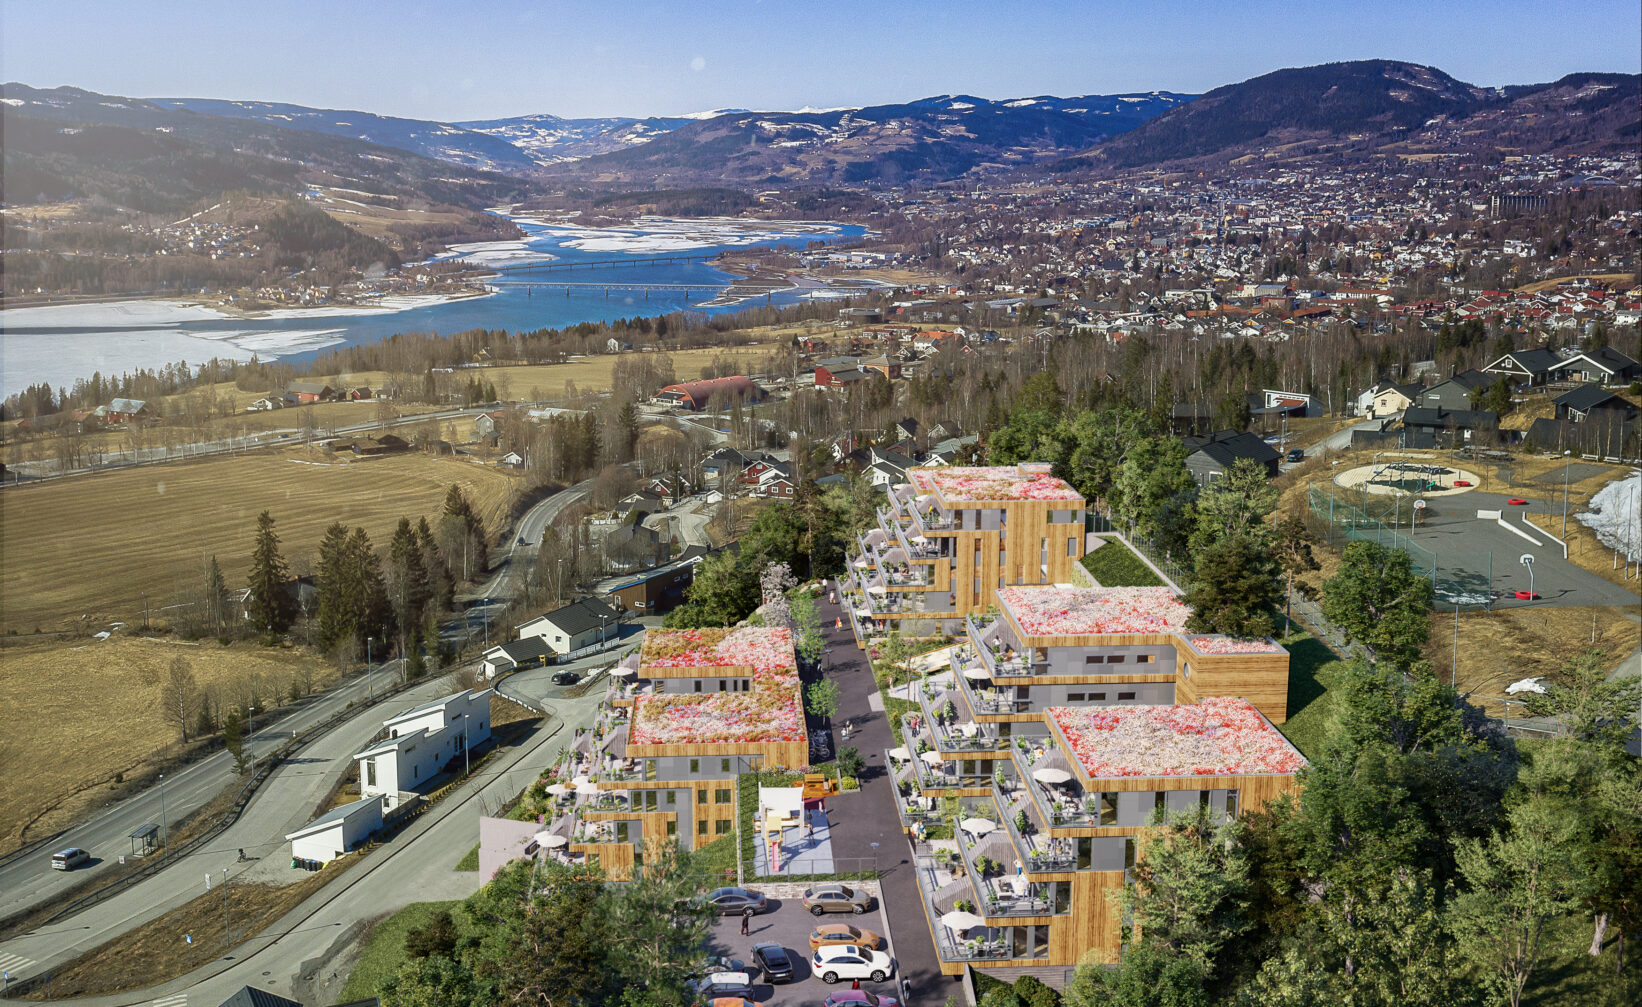 et luftfoto av et boligområde nær en innsjø.